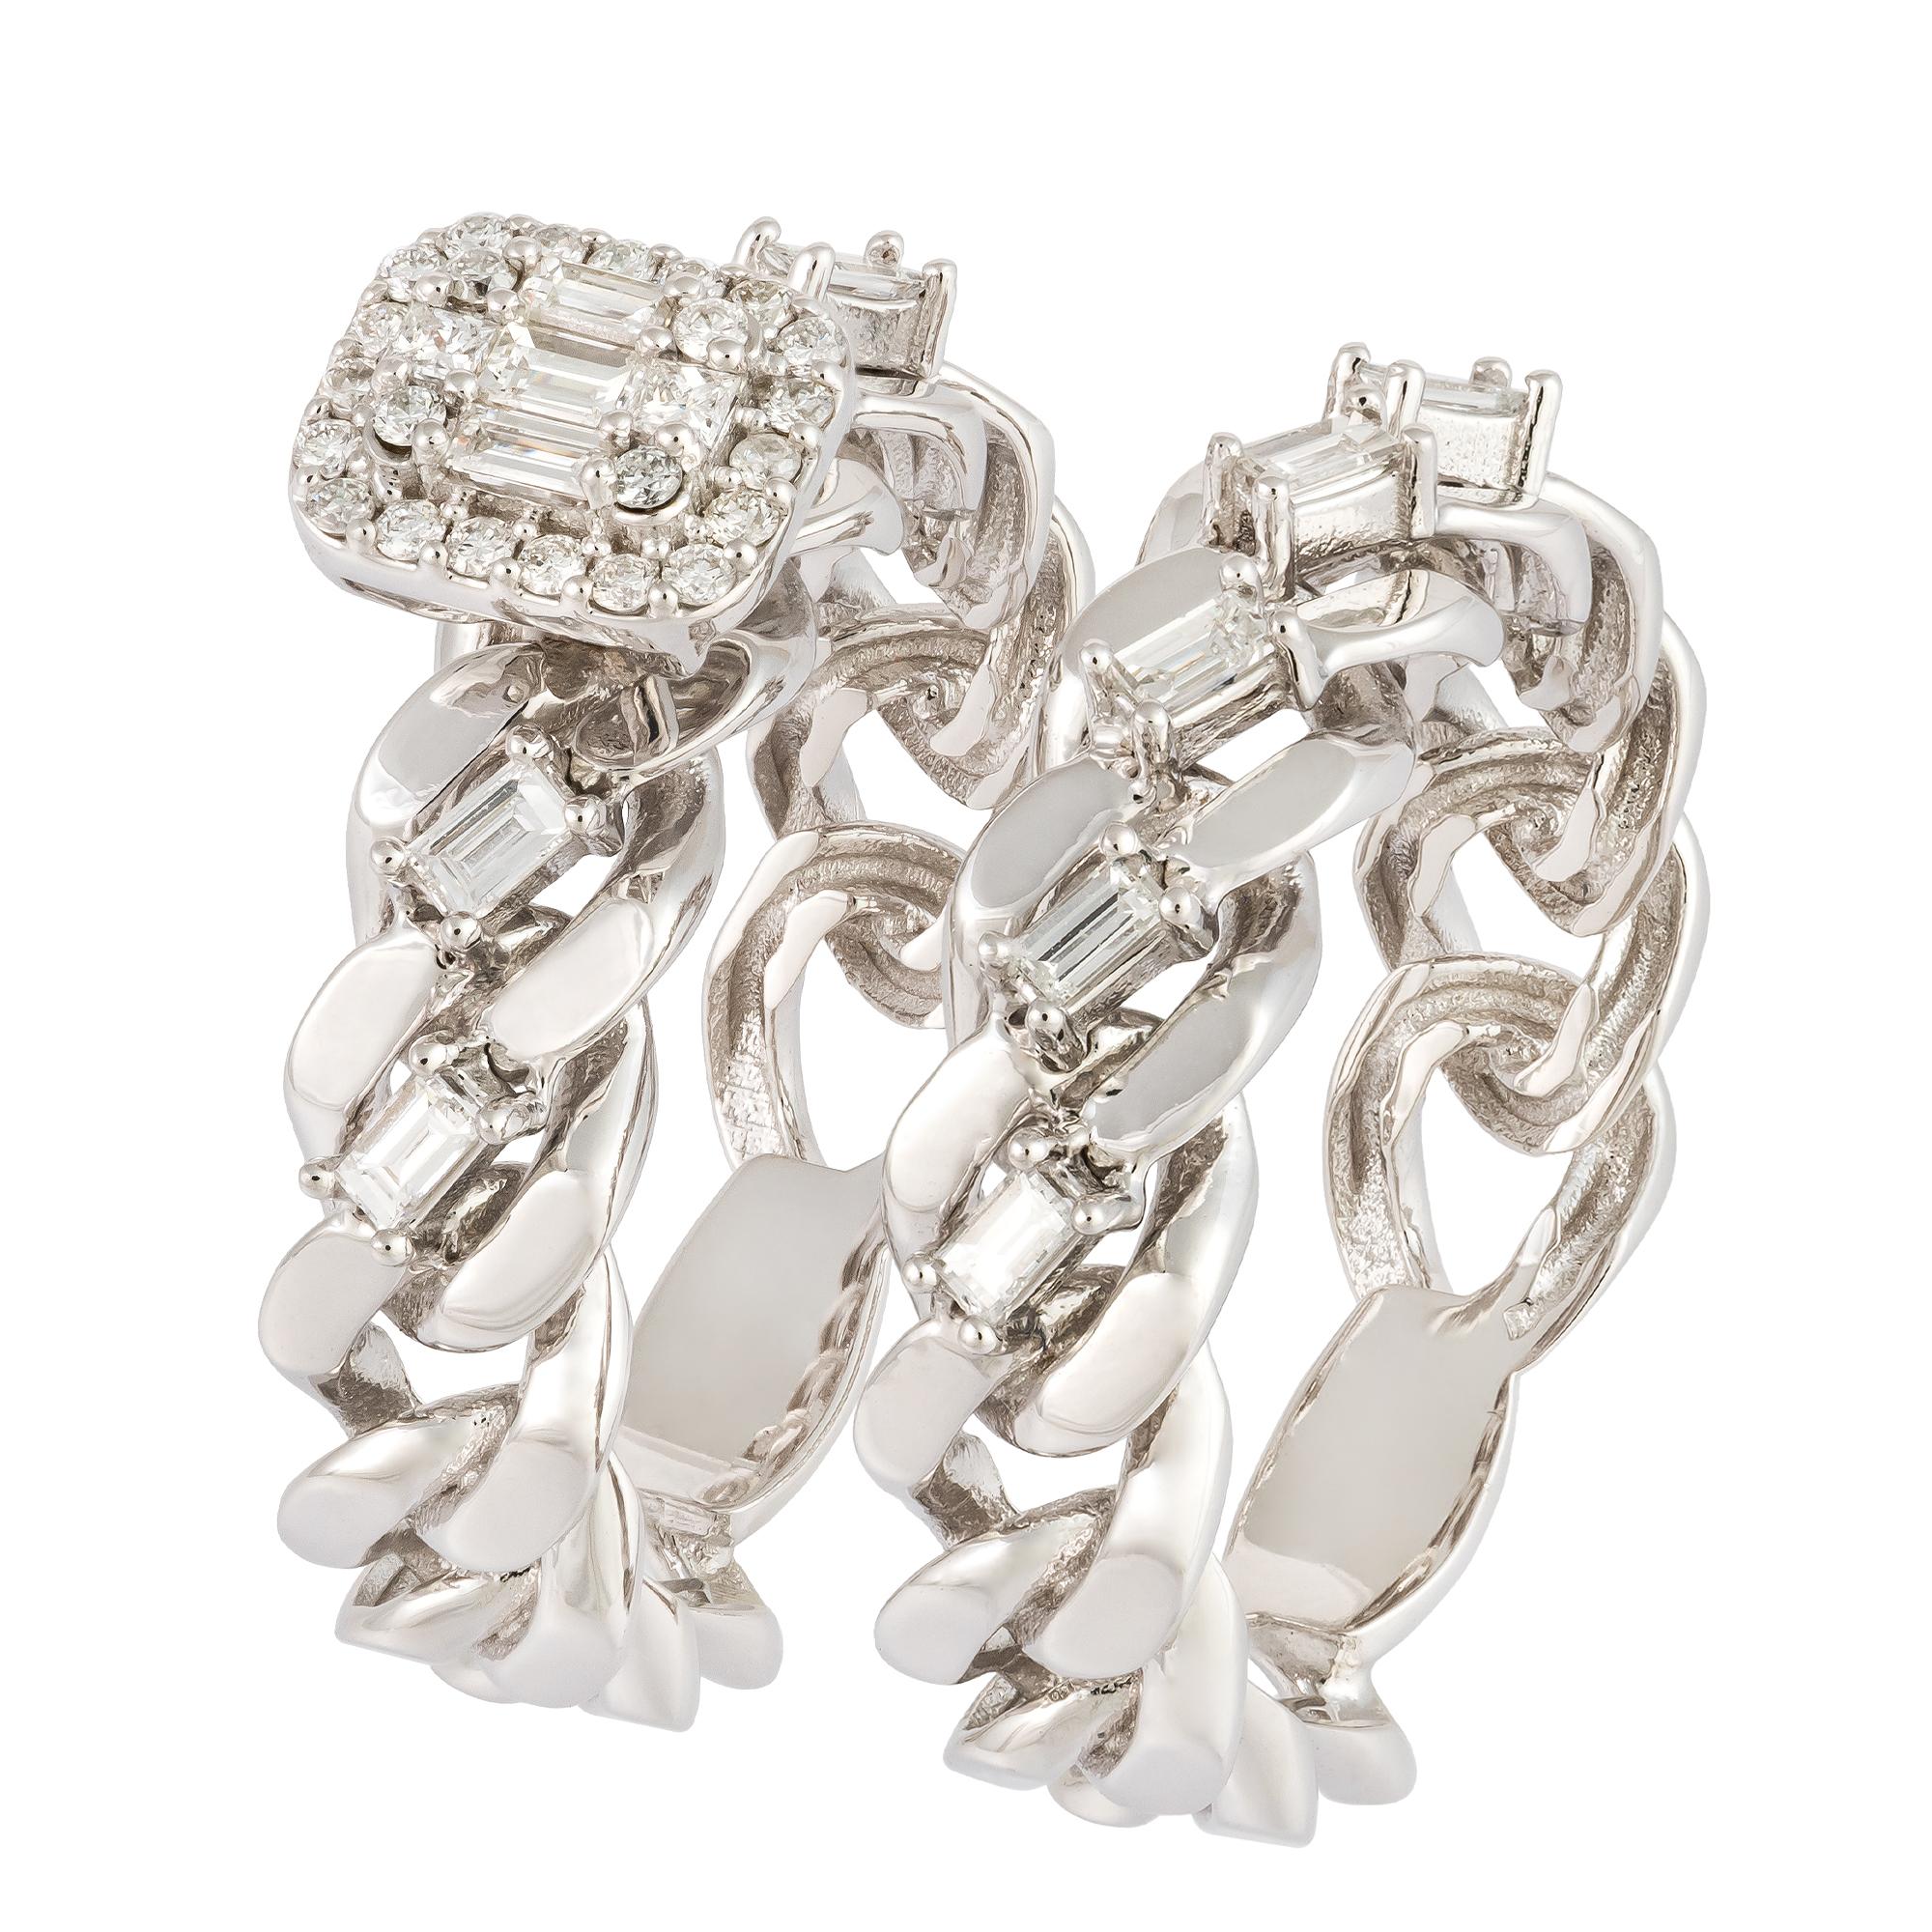 For Sale:  Breathtaking White 18K Gold White Diamond Ring For Her 3